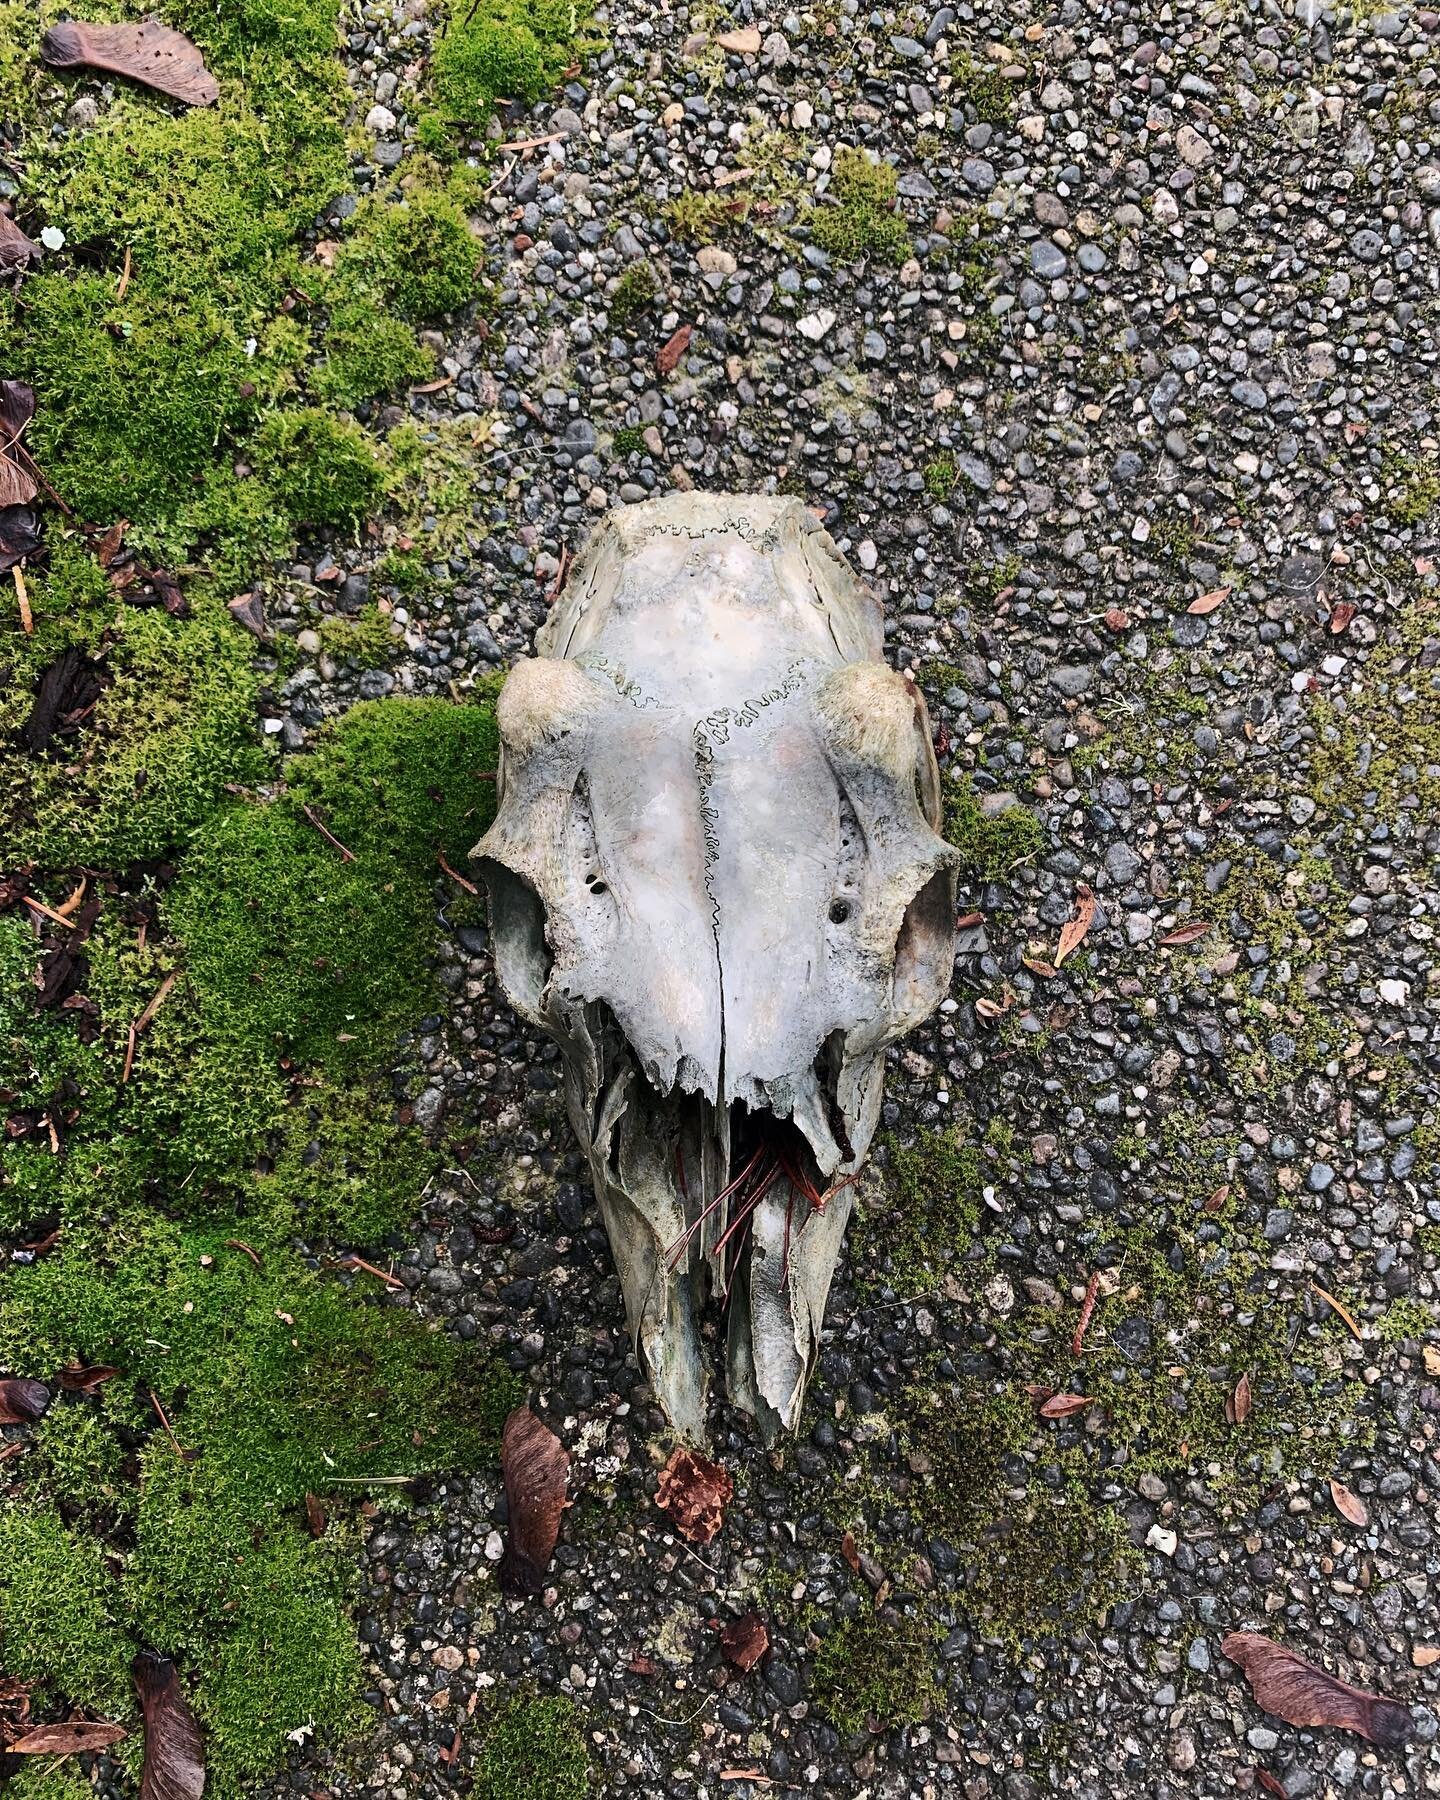 Sometimes we stumble on cool nature finds ✨

#shelton #pnw #skullfind #naturehunt